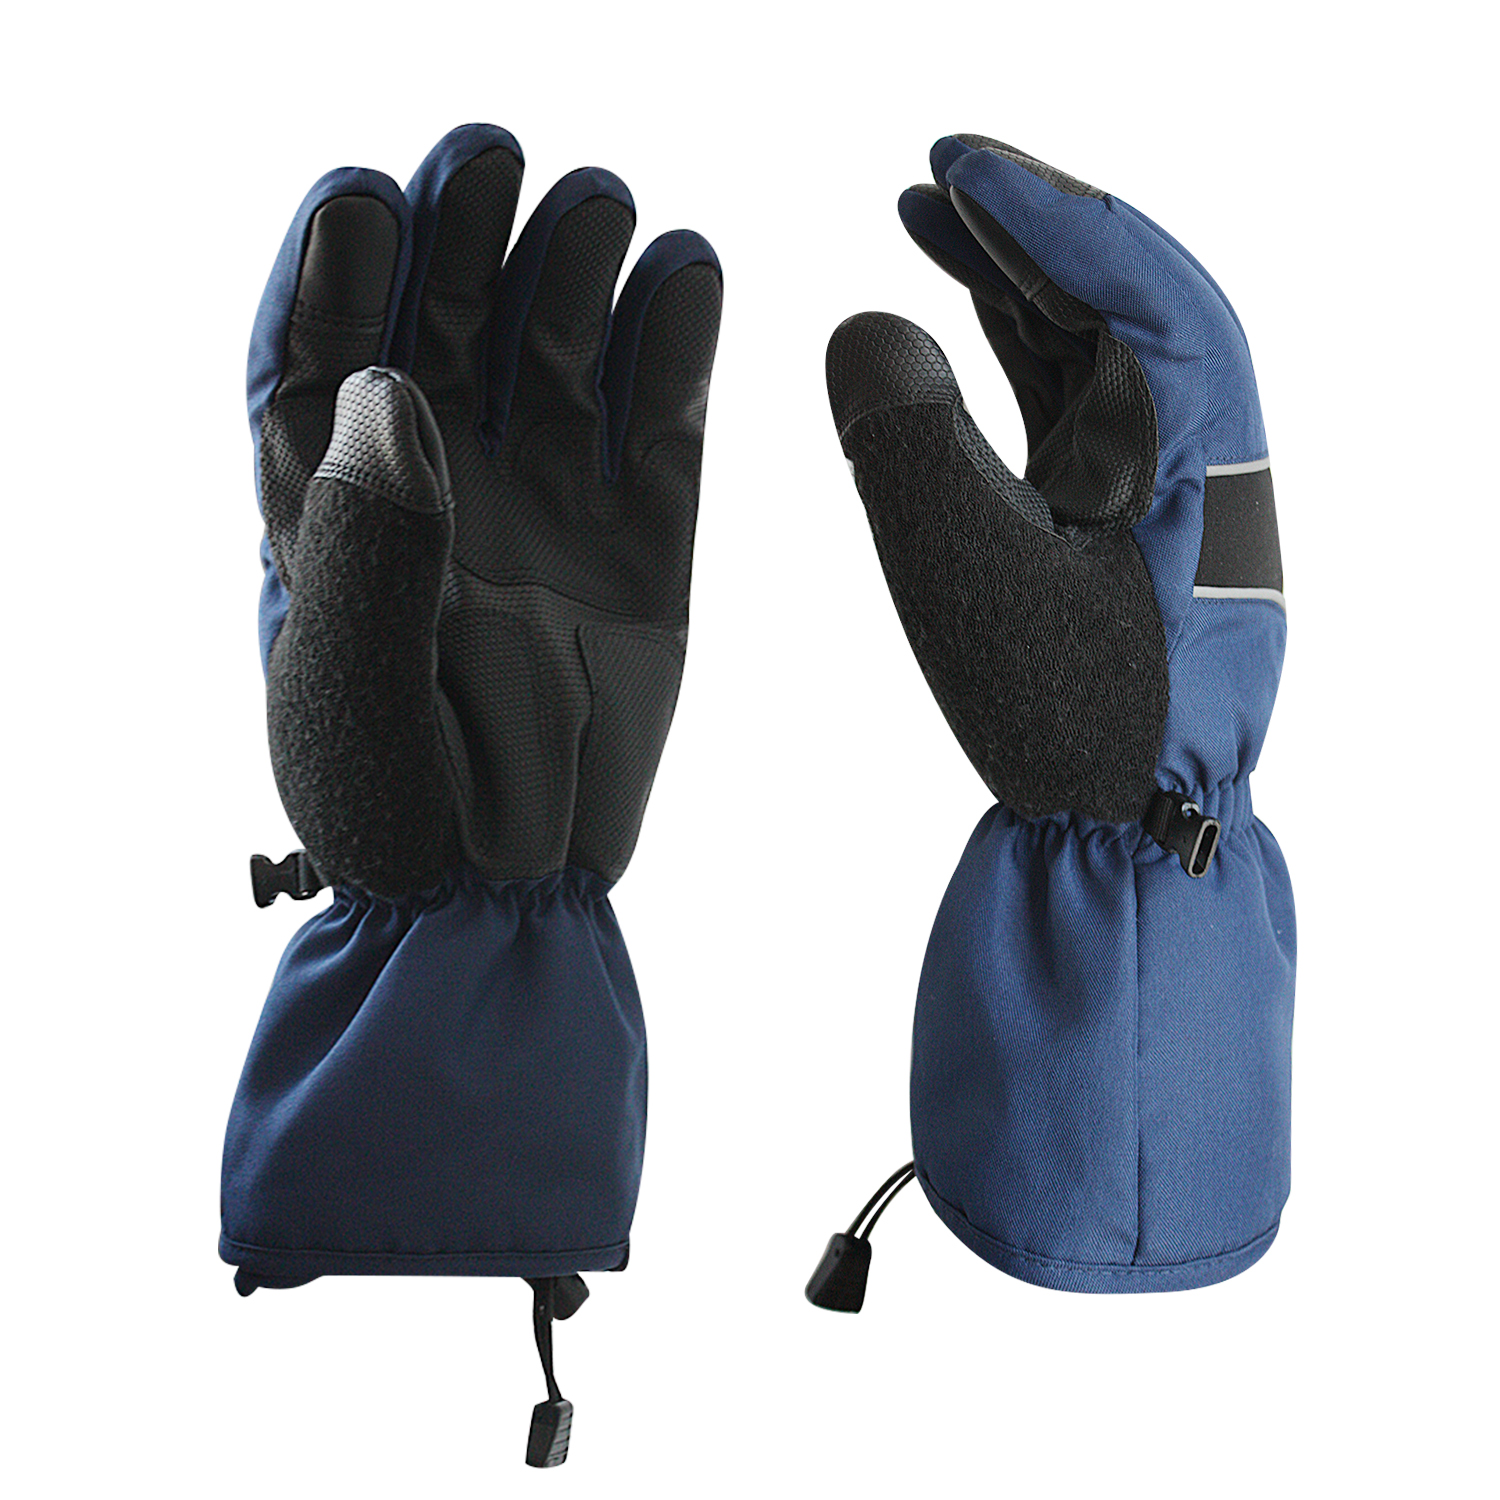 Waterproof Safety Work Gloves/WPG-004